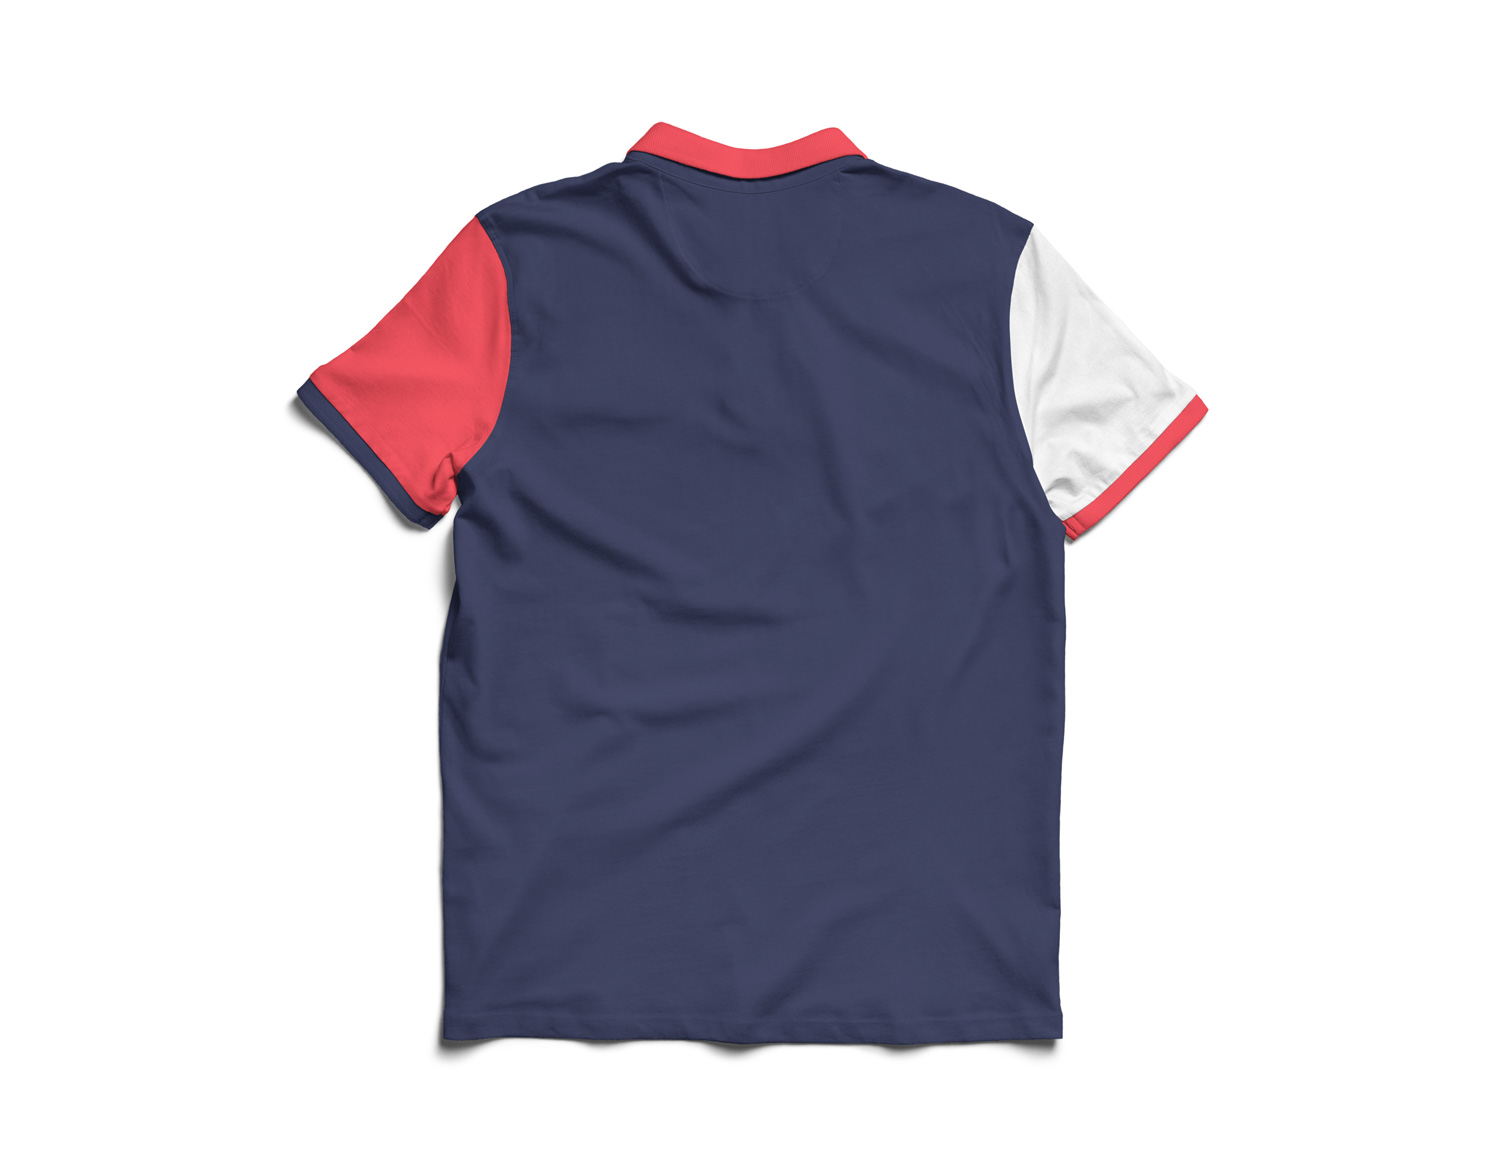 Download Polo Shirt Mockup | Free Mockup PSD Mockup Templates